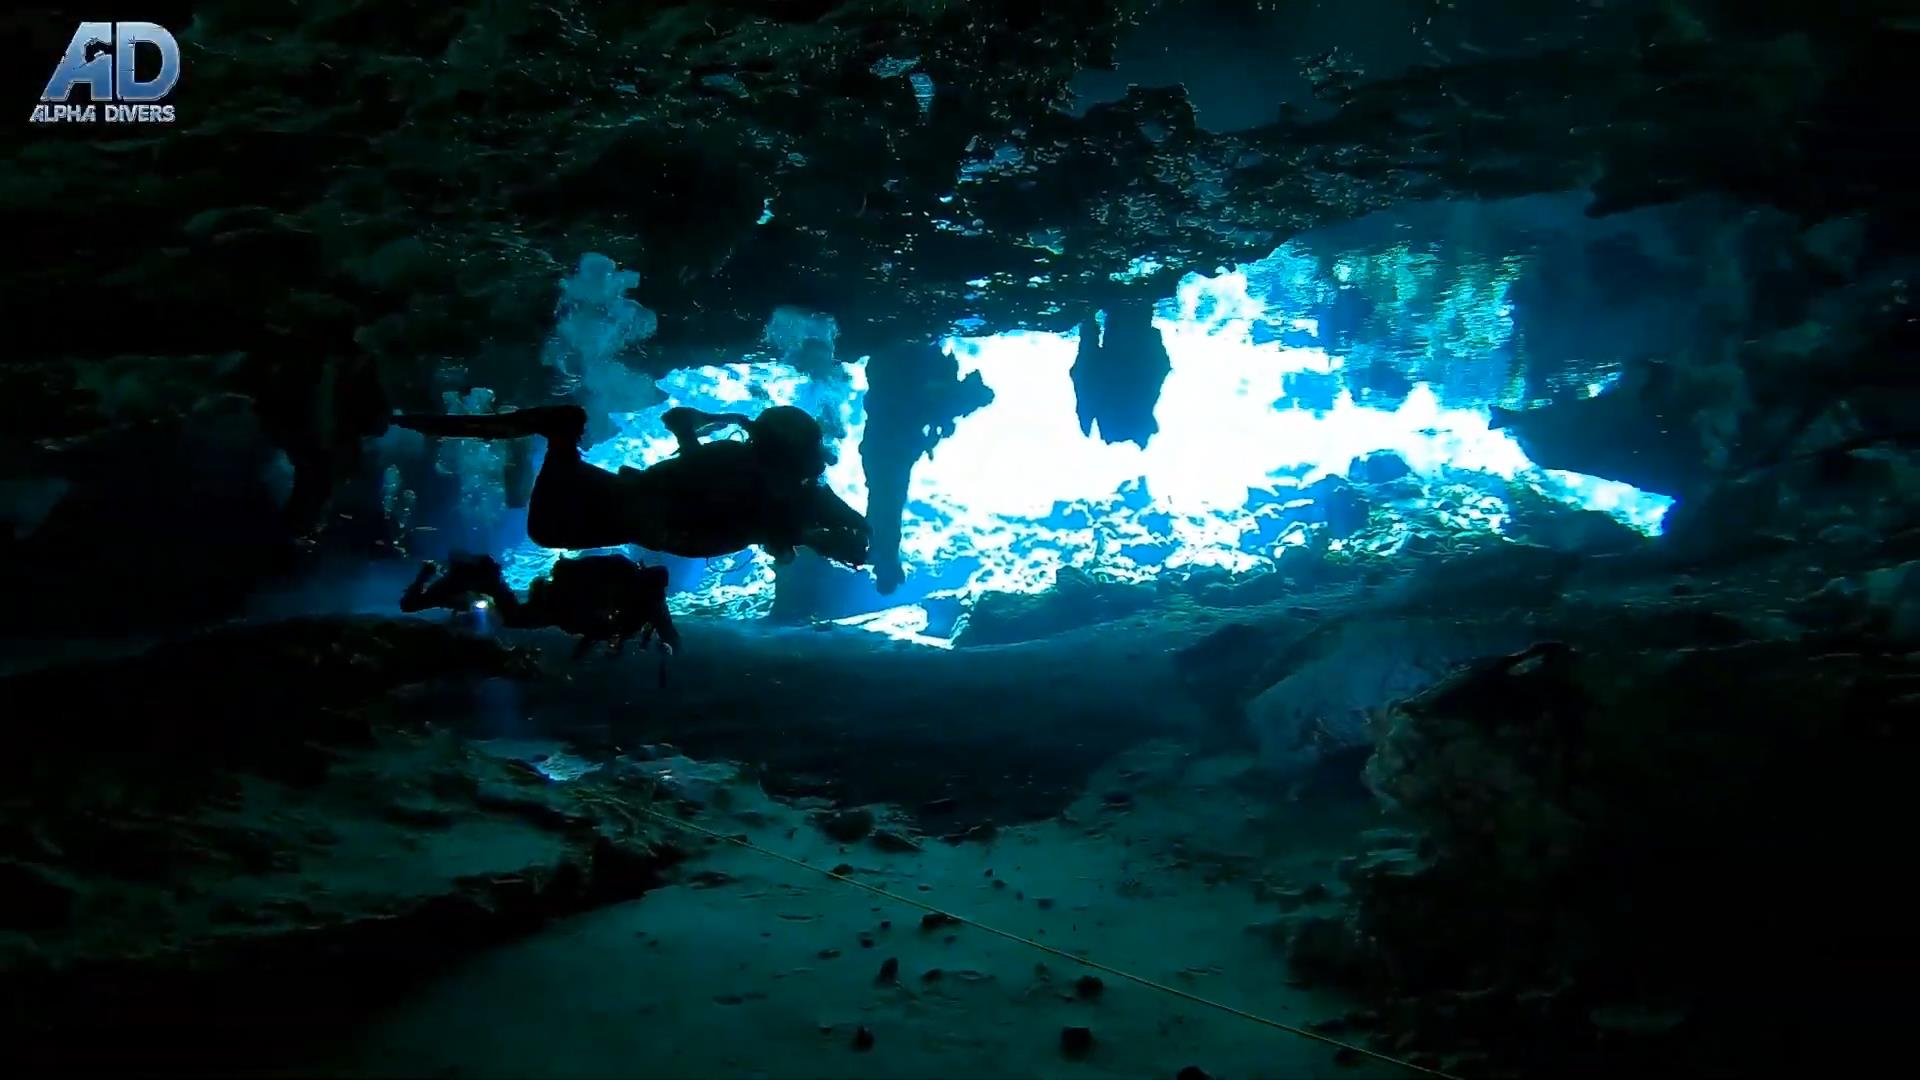 cenoty meksyk nurkowanie jaskiniowe alpha-divers wyprawy wyjazdy nurkowe kursy nurkowania jaskiniowego w meksyku